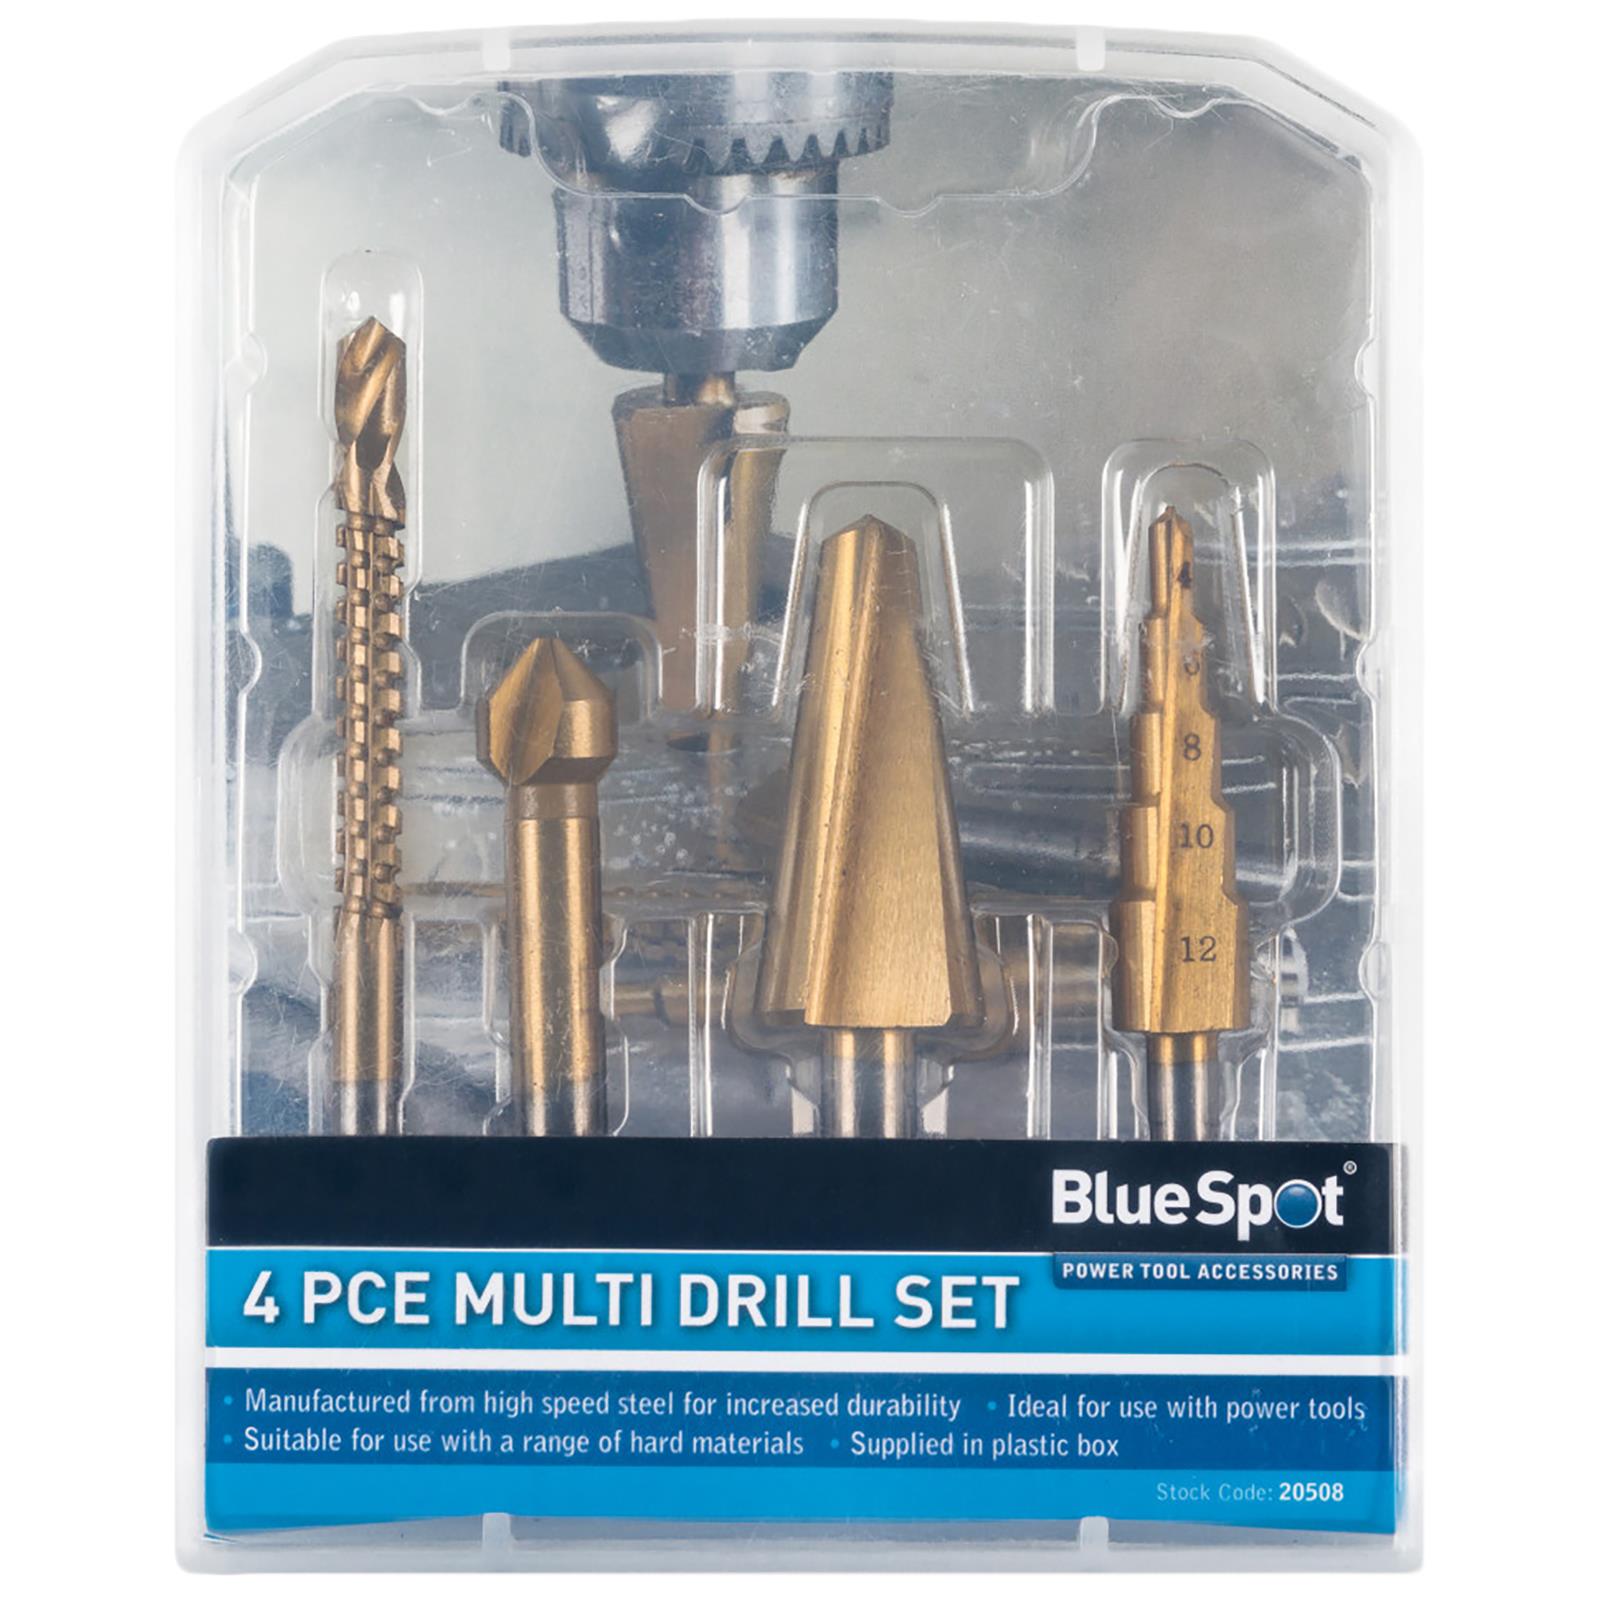 BlueSpot Multi Drill Set 4 Piece Countersink Step Taper Saw Bits